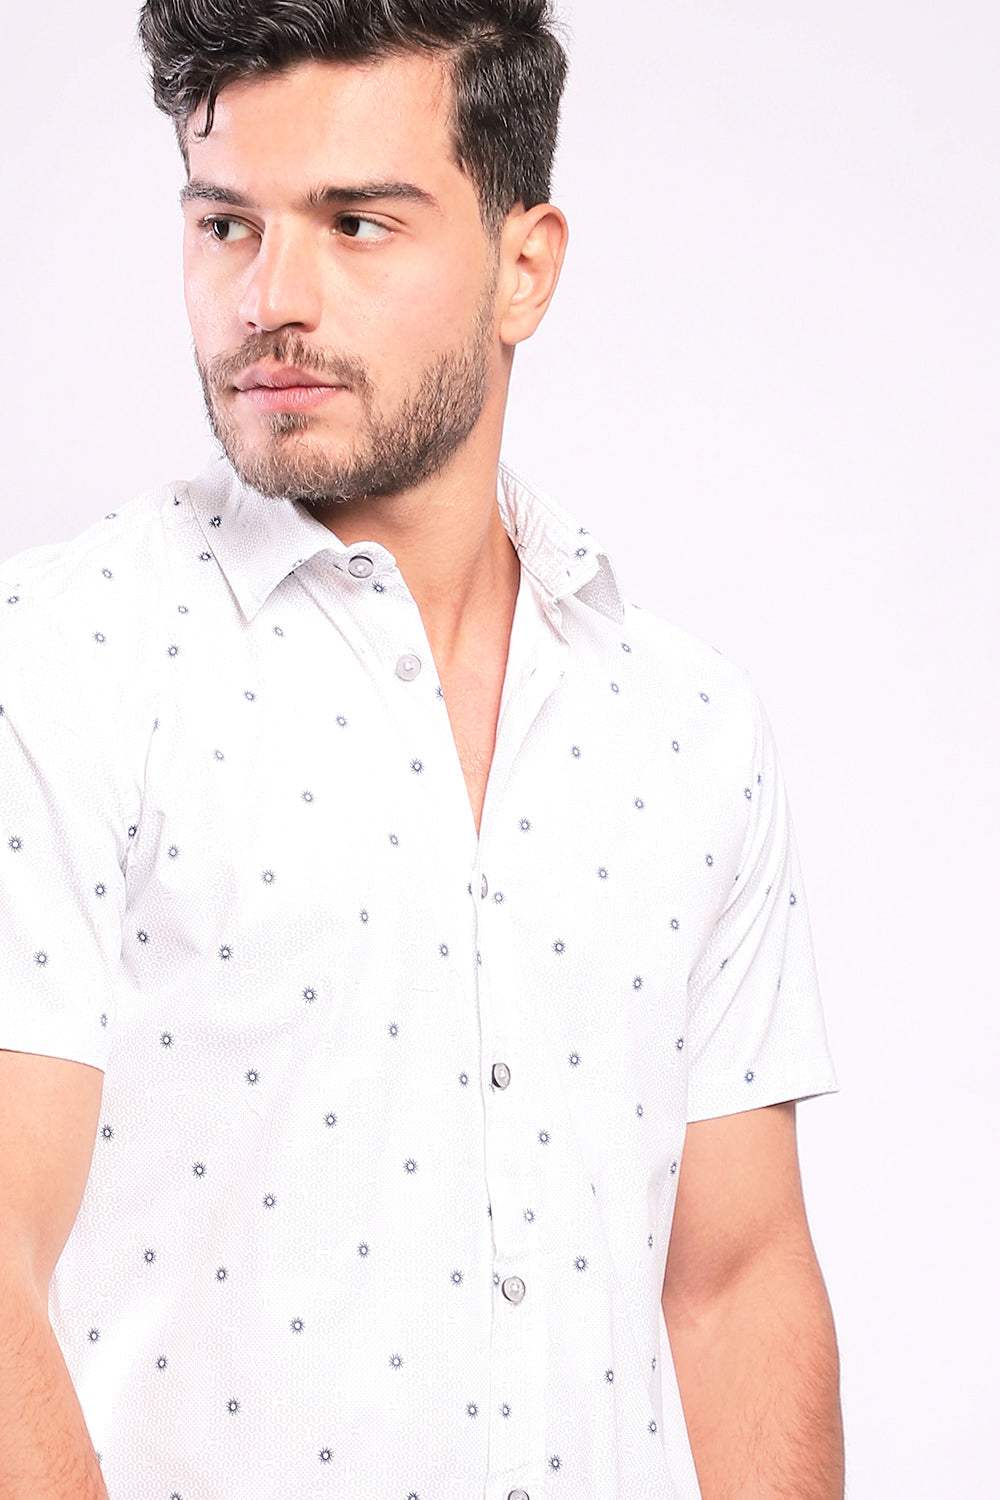 Buttoned Short Sleeves Sun Pattern Shirt